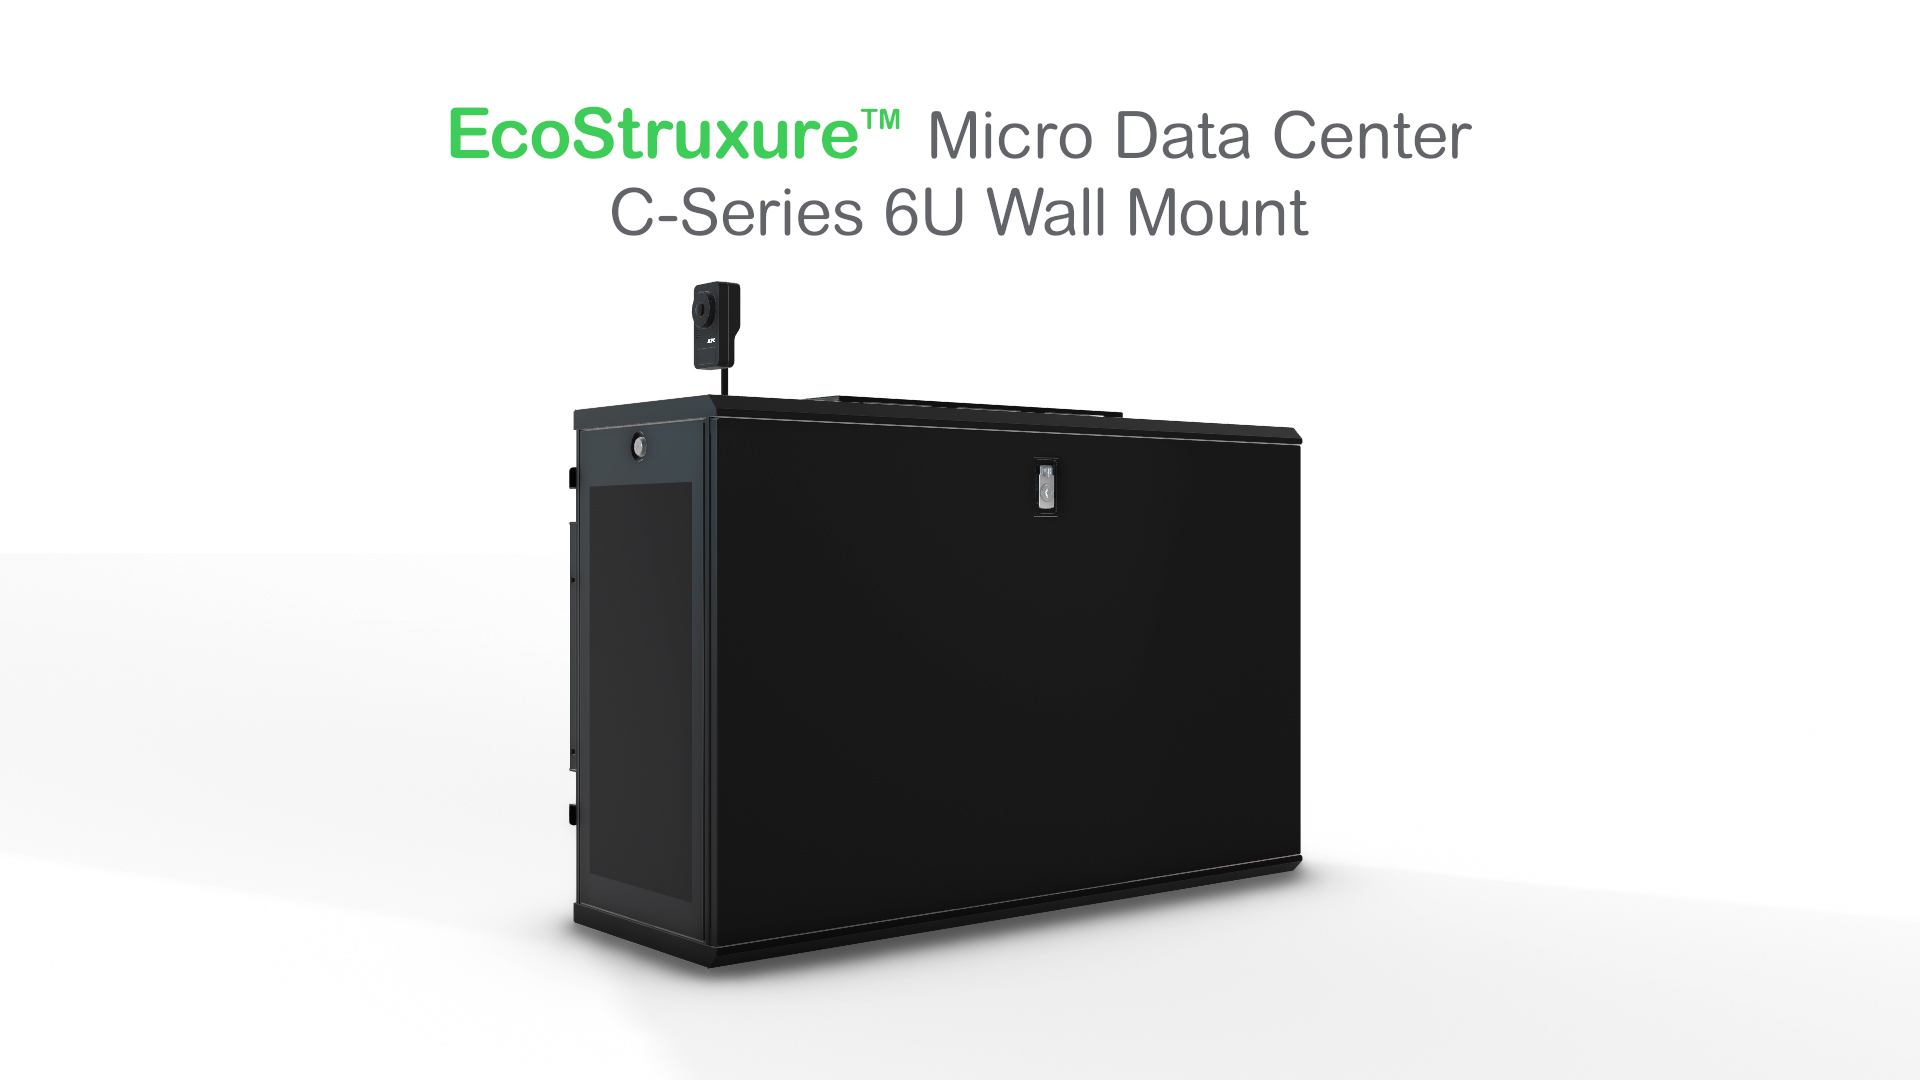 Schneider Electric giải quyết các thách thức điện toán biên với tiểu trung tâm dữ liệu EcoStruxure 6U Wall Mount